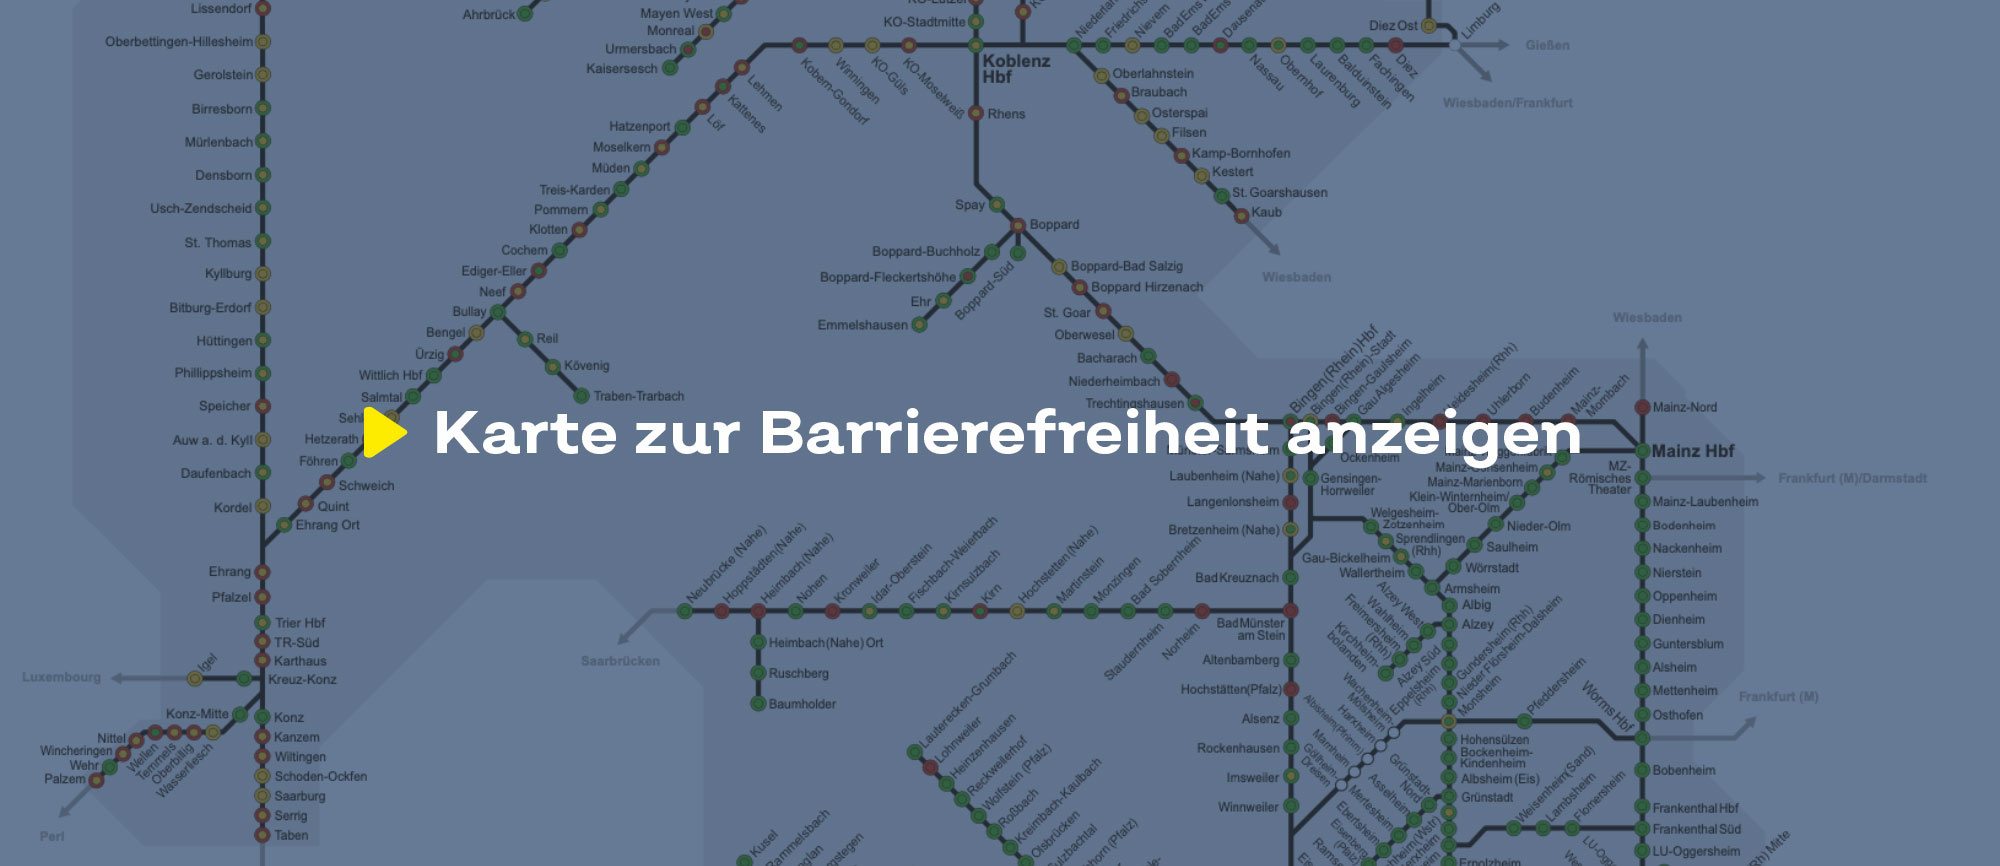 Text 'Karte zur Barrierefreiheit' auf einem bläulich eingefärbten Hintergrund, der einen Ausschnitt des Liniennetzes zeigt